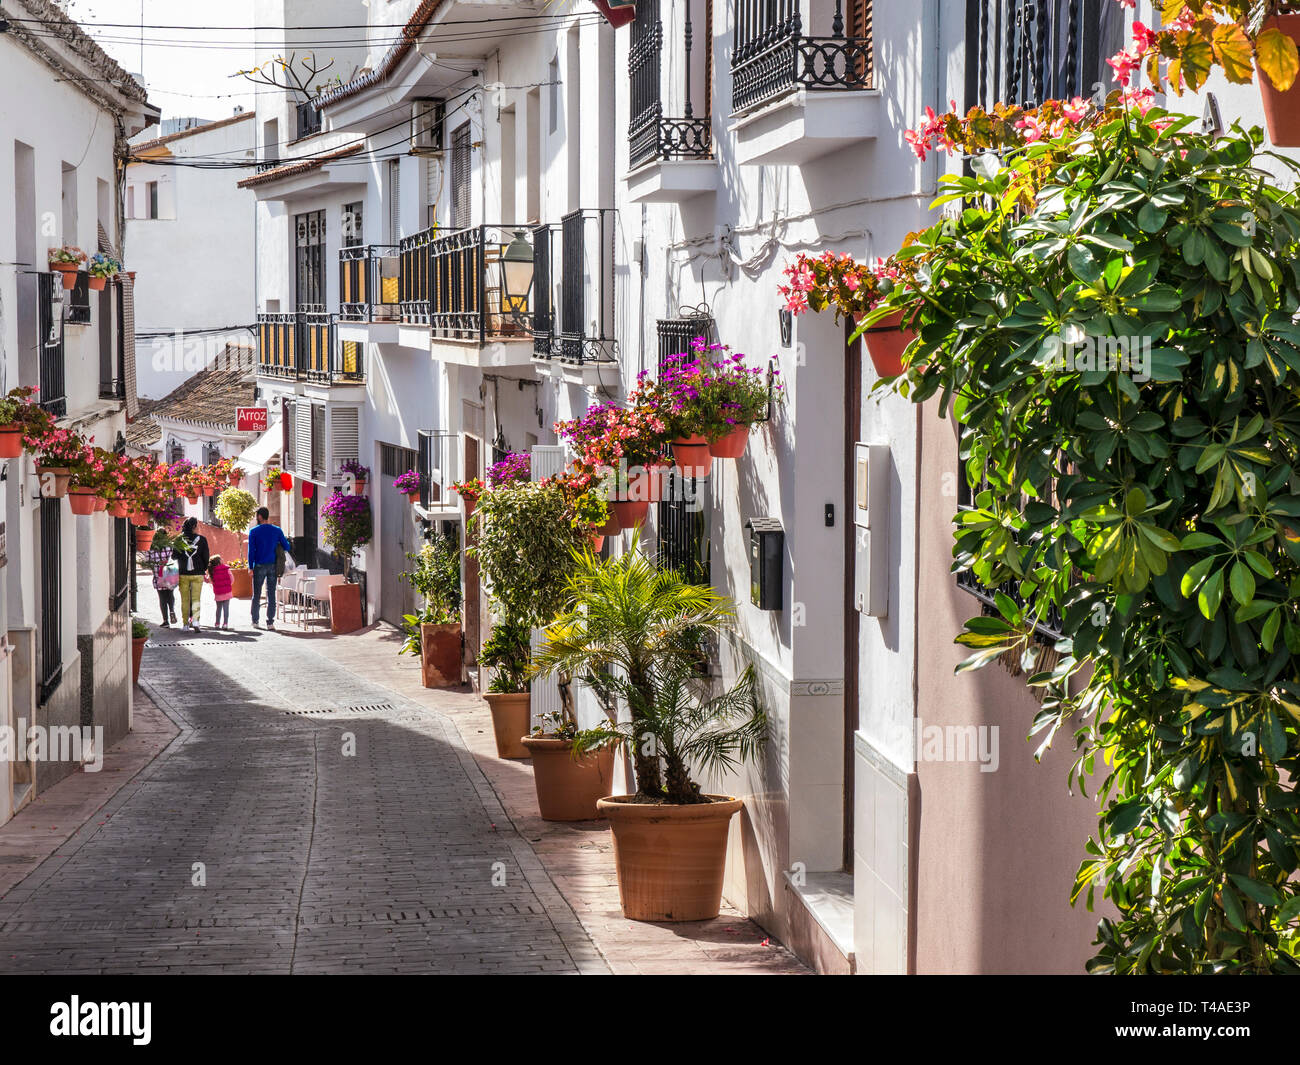 Estepona città vecchia con il bianco lavato edifici tradizionali e vasi di gerani, famiglia esplorando le tranquille strade storiche Estepona, Málaga, Spagna Foto Stock